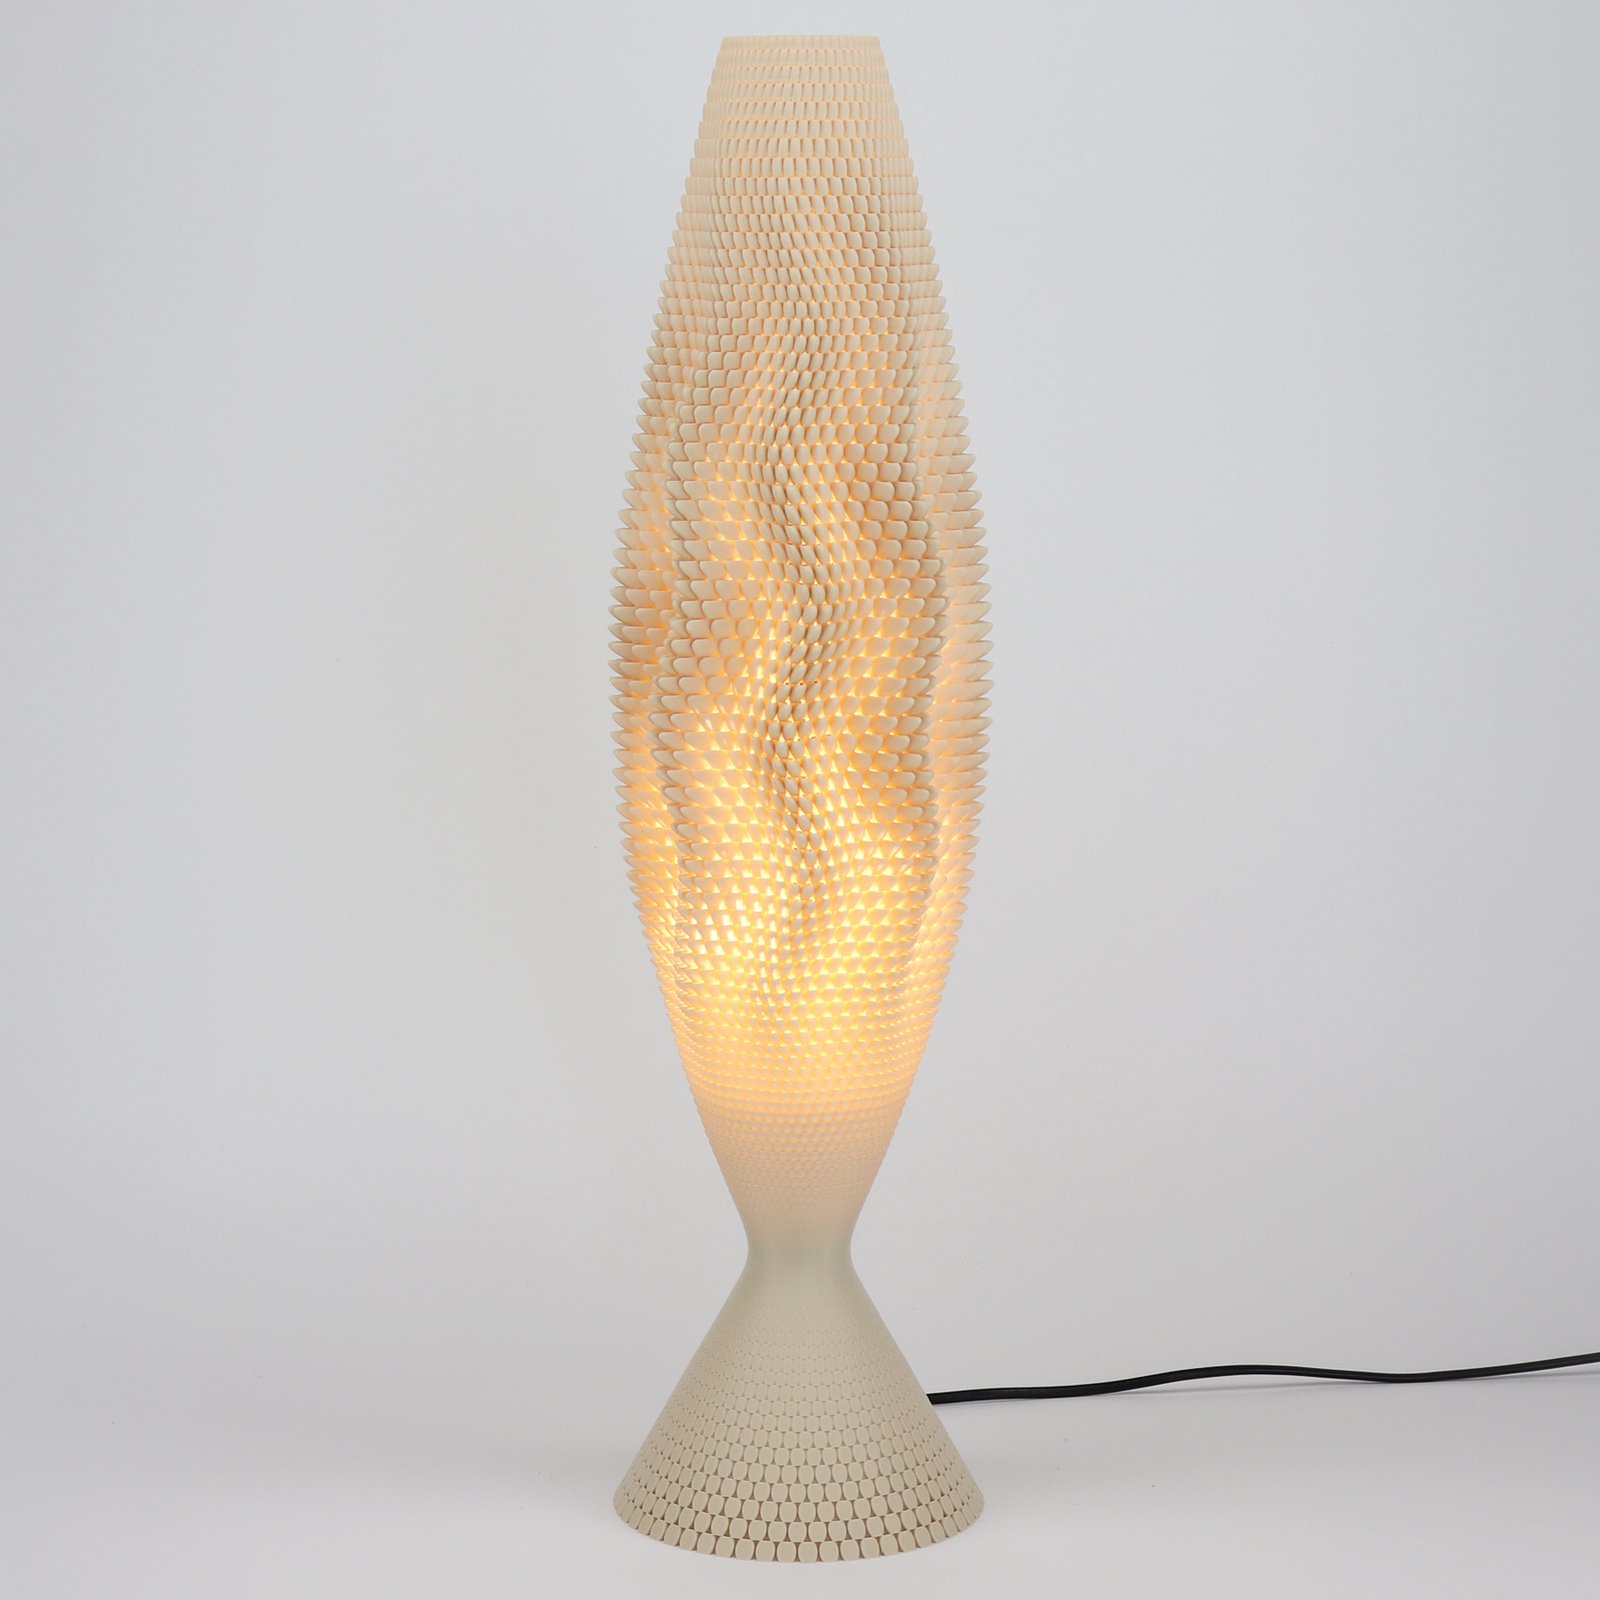 Koral asztali lámpa organikus anyagból, vászonból, 65 cm